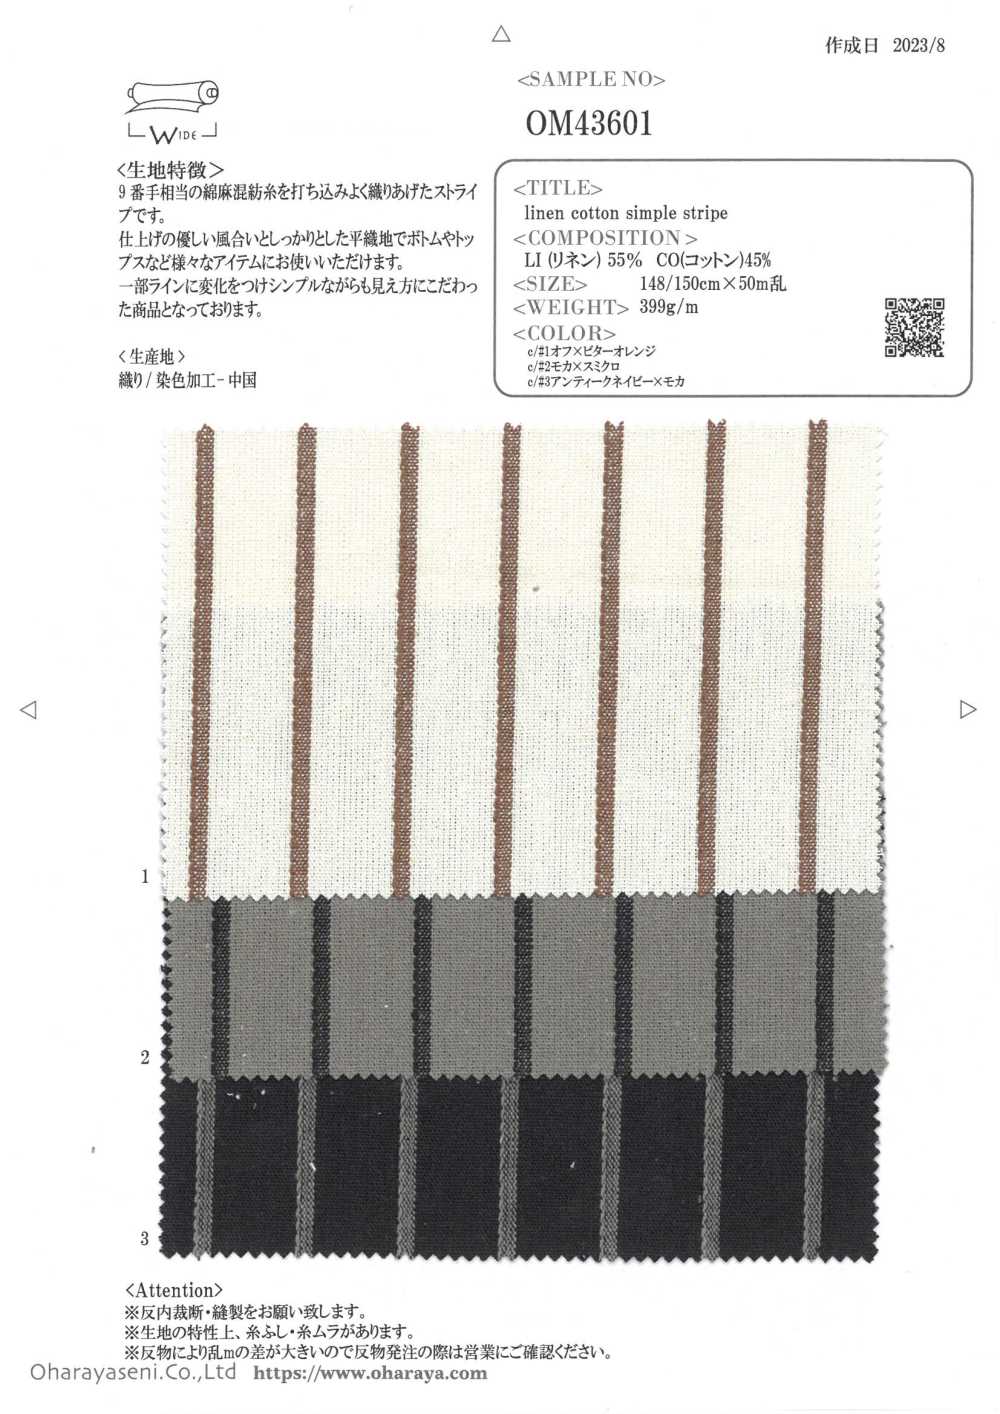 OM43601 Leinen Baumwolle Einfach Streifen[Textilgewebe] Oharayaseni